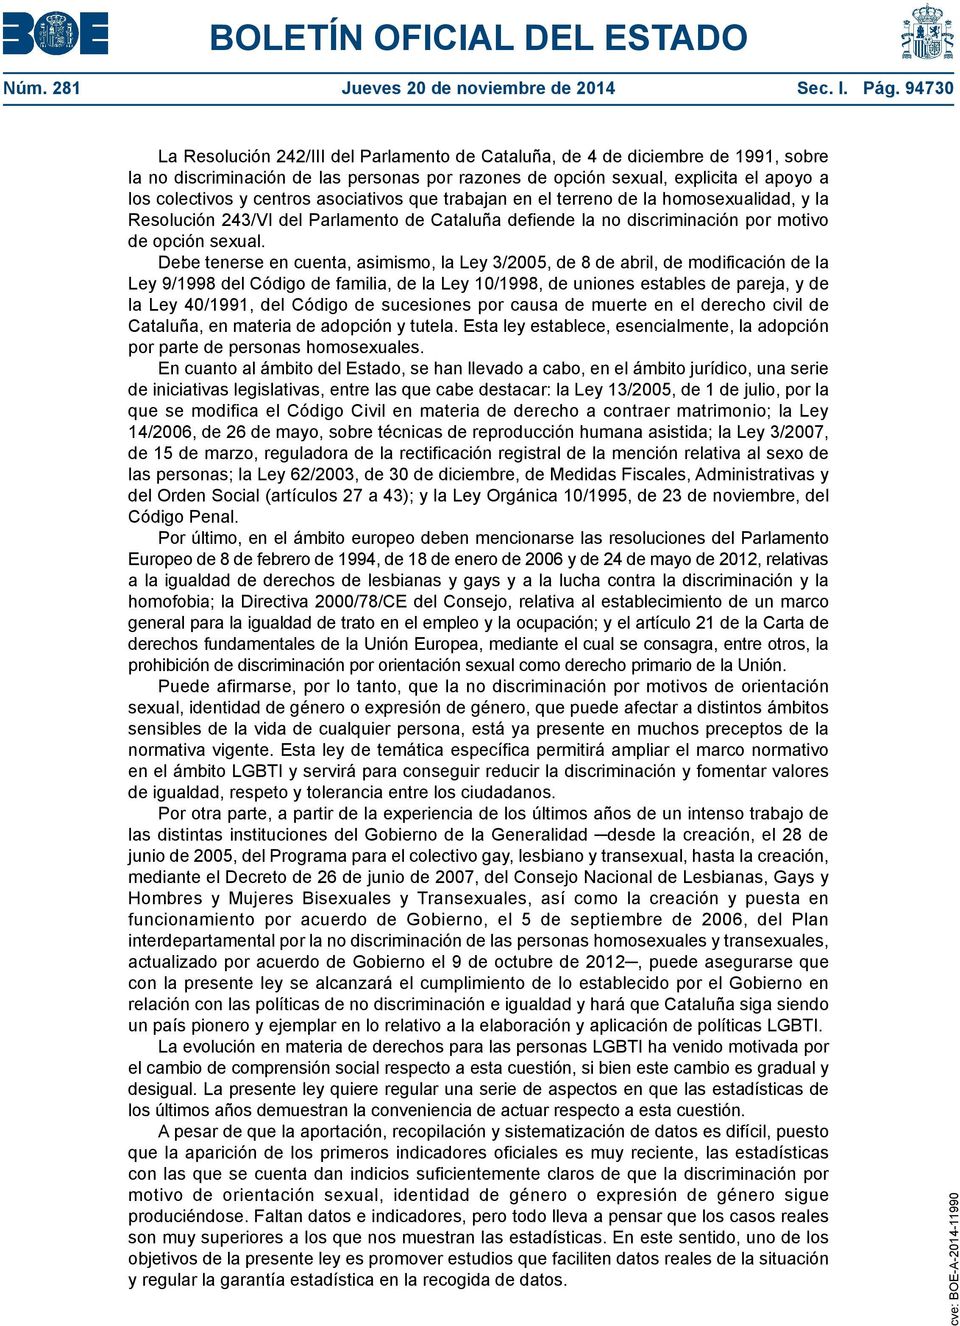 centros asociativos que trabajan en el terreno de la homosexualidad, y la Resolución 243/VI del Parlamento de Cataluña defiende la no discriminación por motivo de opción sexual.